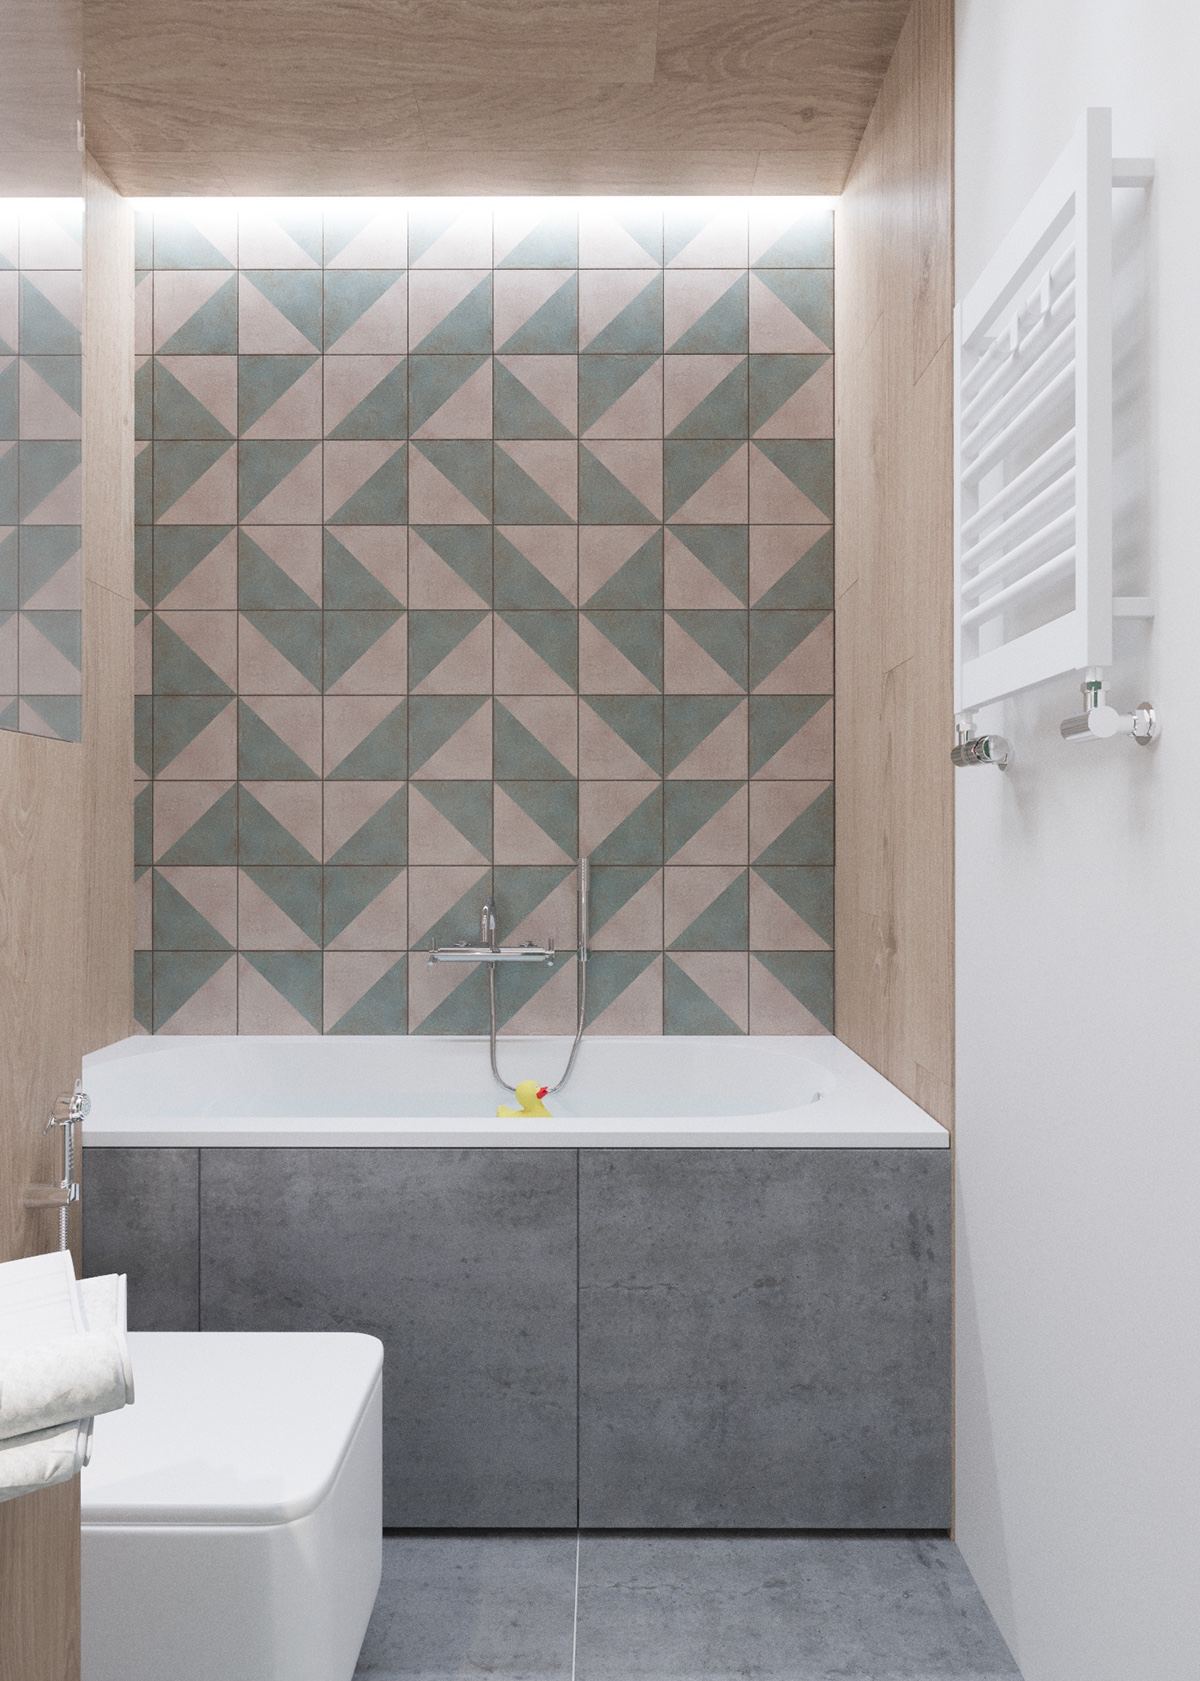 hexagonal wall pattern design